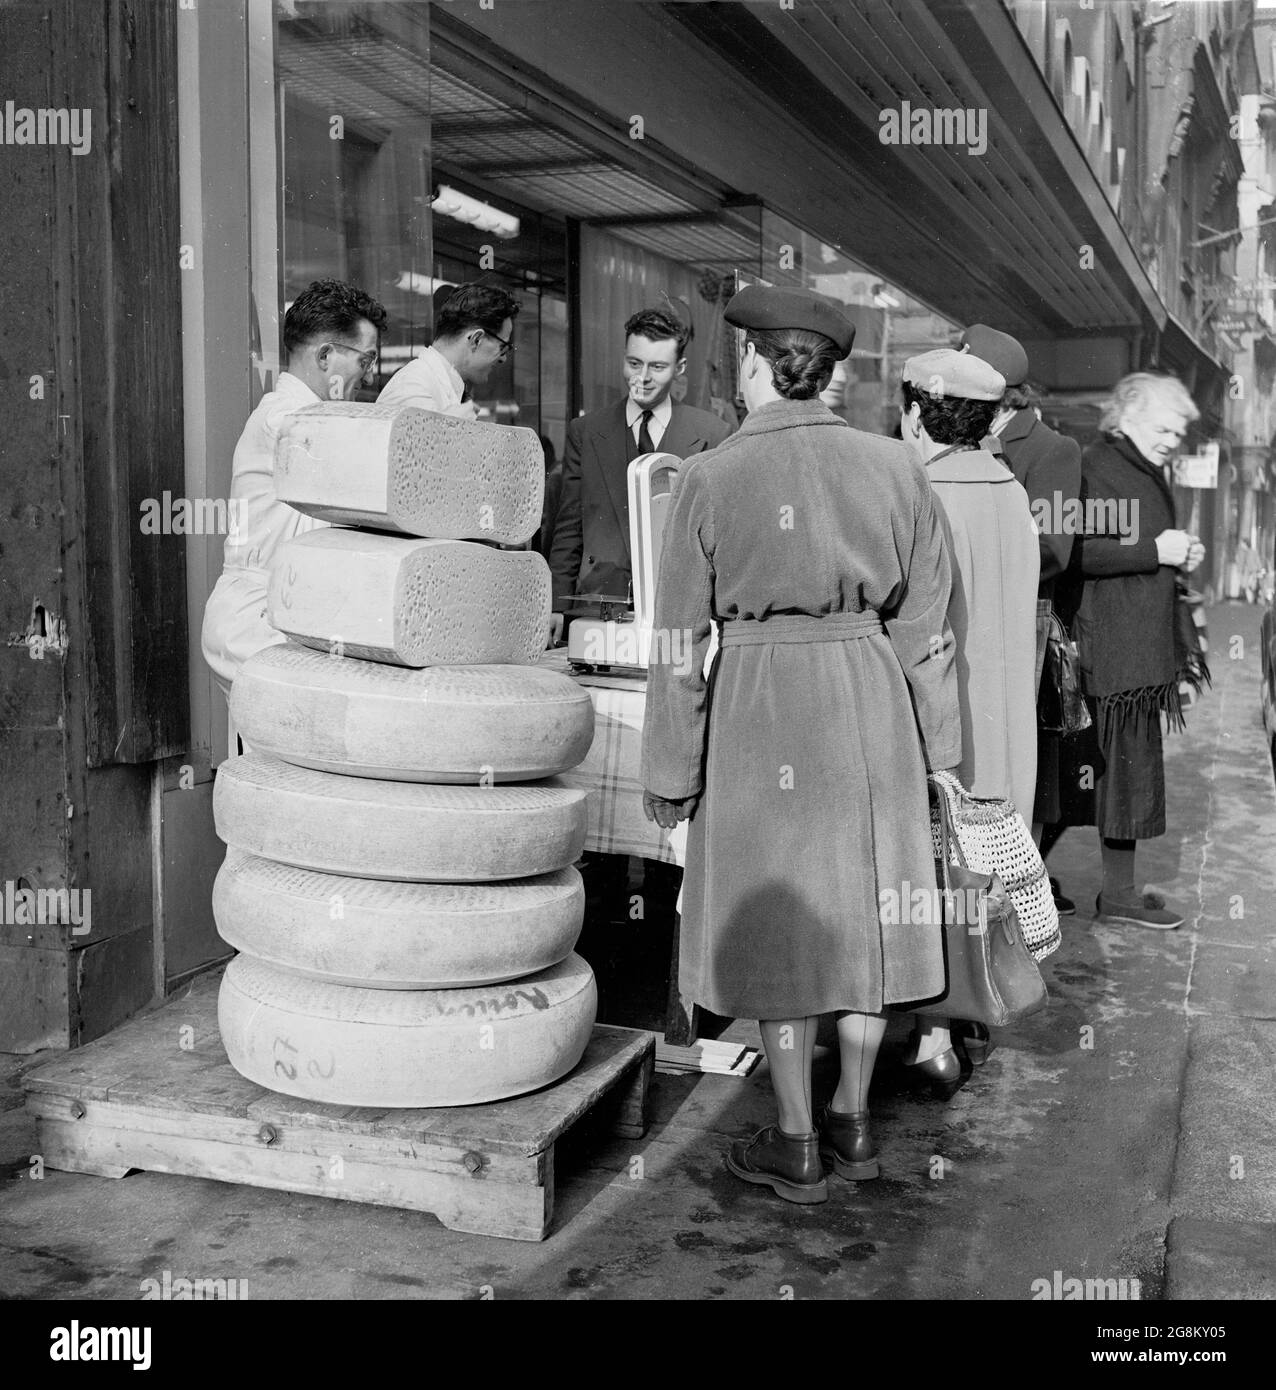 Immagine storica che mostra le donne che fanno shopping a Rouen all'esterno della strada, in piedi da alcune grandi fette rotonde di formaggio accatastate su una piattaforma di legno all'esterno di un negozio di formaggi o une Cremerie, Francia anni '50 Foto Stock